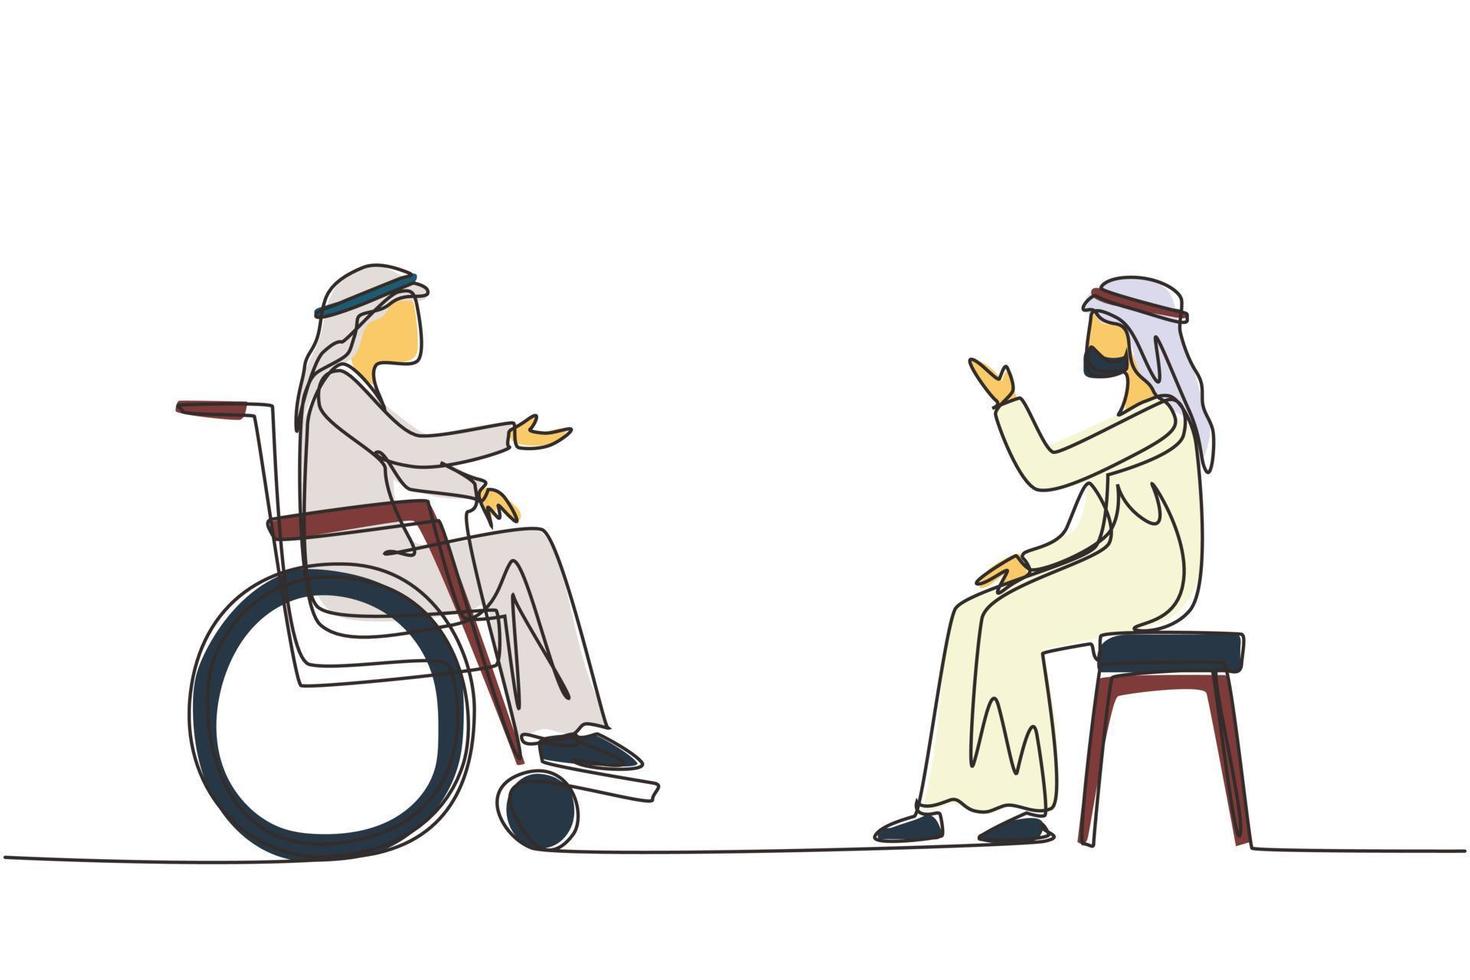 única linha contínua desenhando duas pessoas árabes sentadas conversando, uma usando cadeira, outra usando cadeira de rodas. homem amigável estão falando uns com os outros, sociedade humana com deficiência. vetor de design de desenho de uma linha